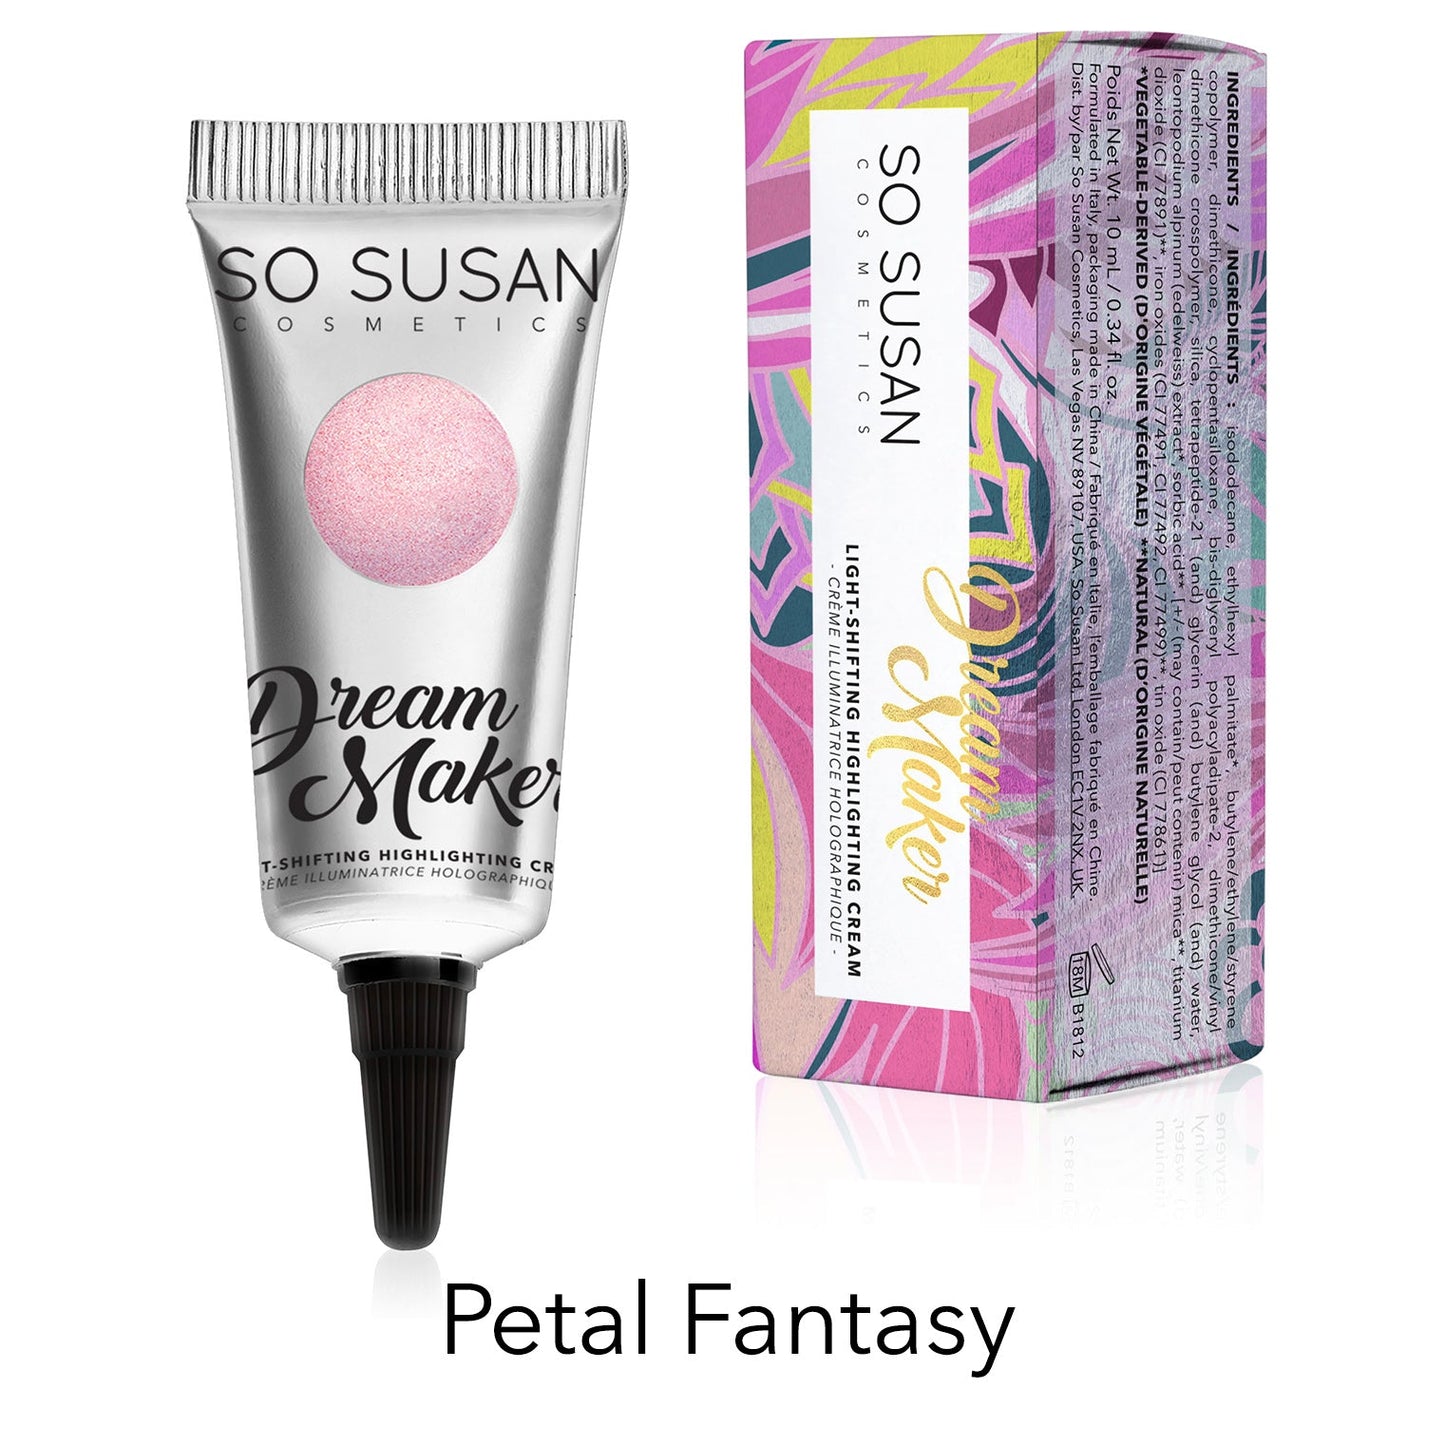 SoSusan Dream Maker Highlighter- Petal Fantasy